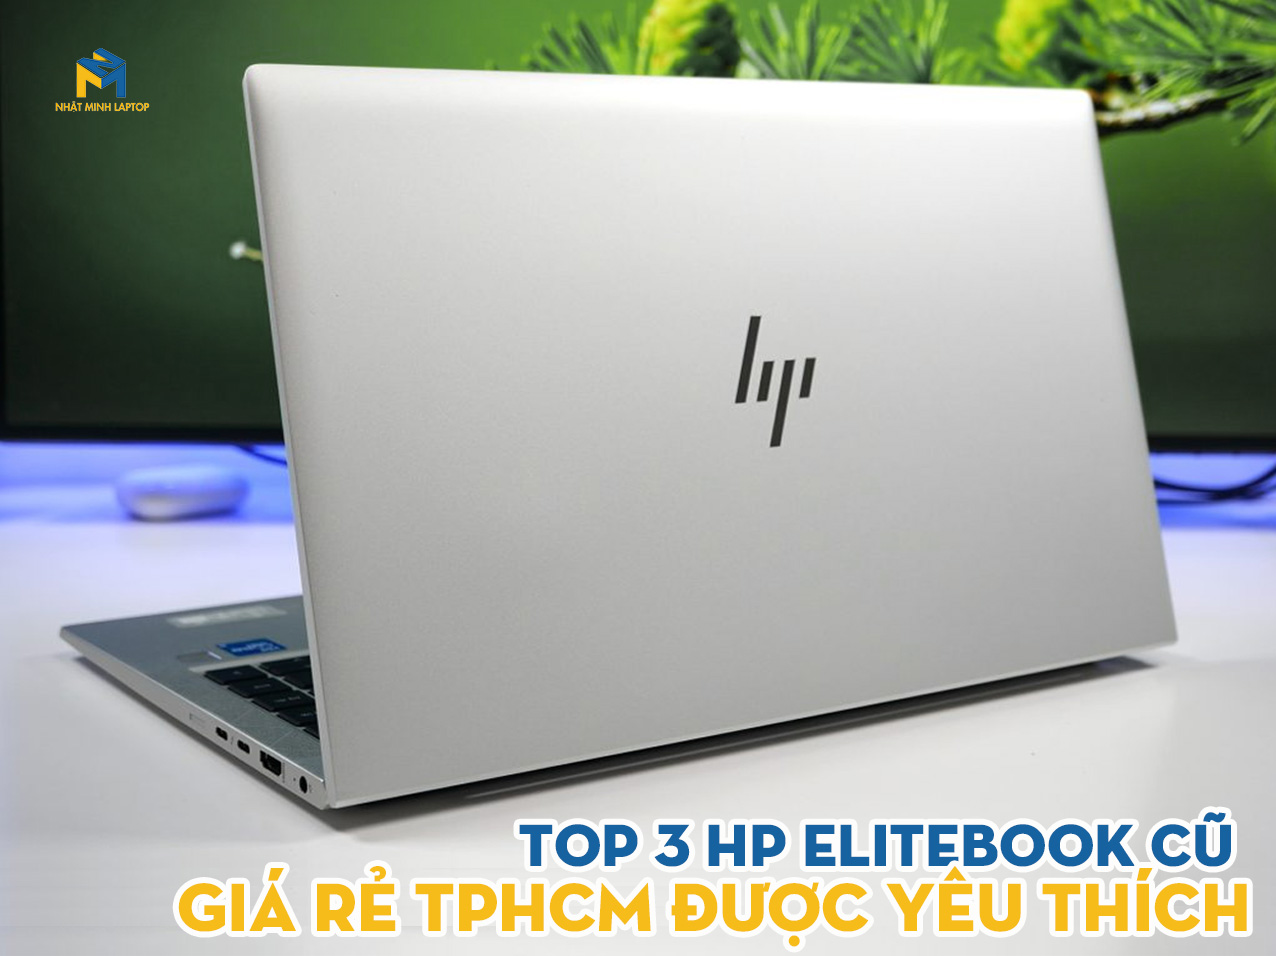 Top 3 Chiếc Laptop HP Elitebook cũ giá rẻ TPHCM được yêu thích nhất